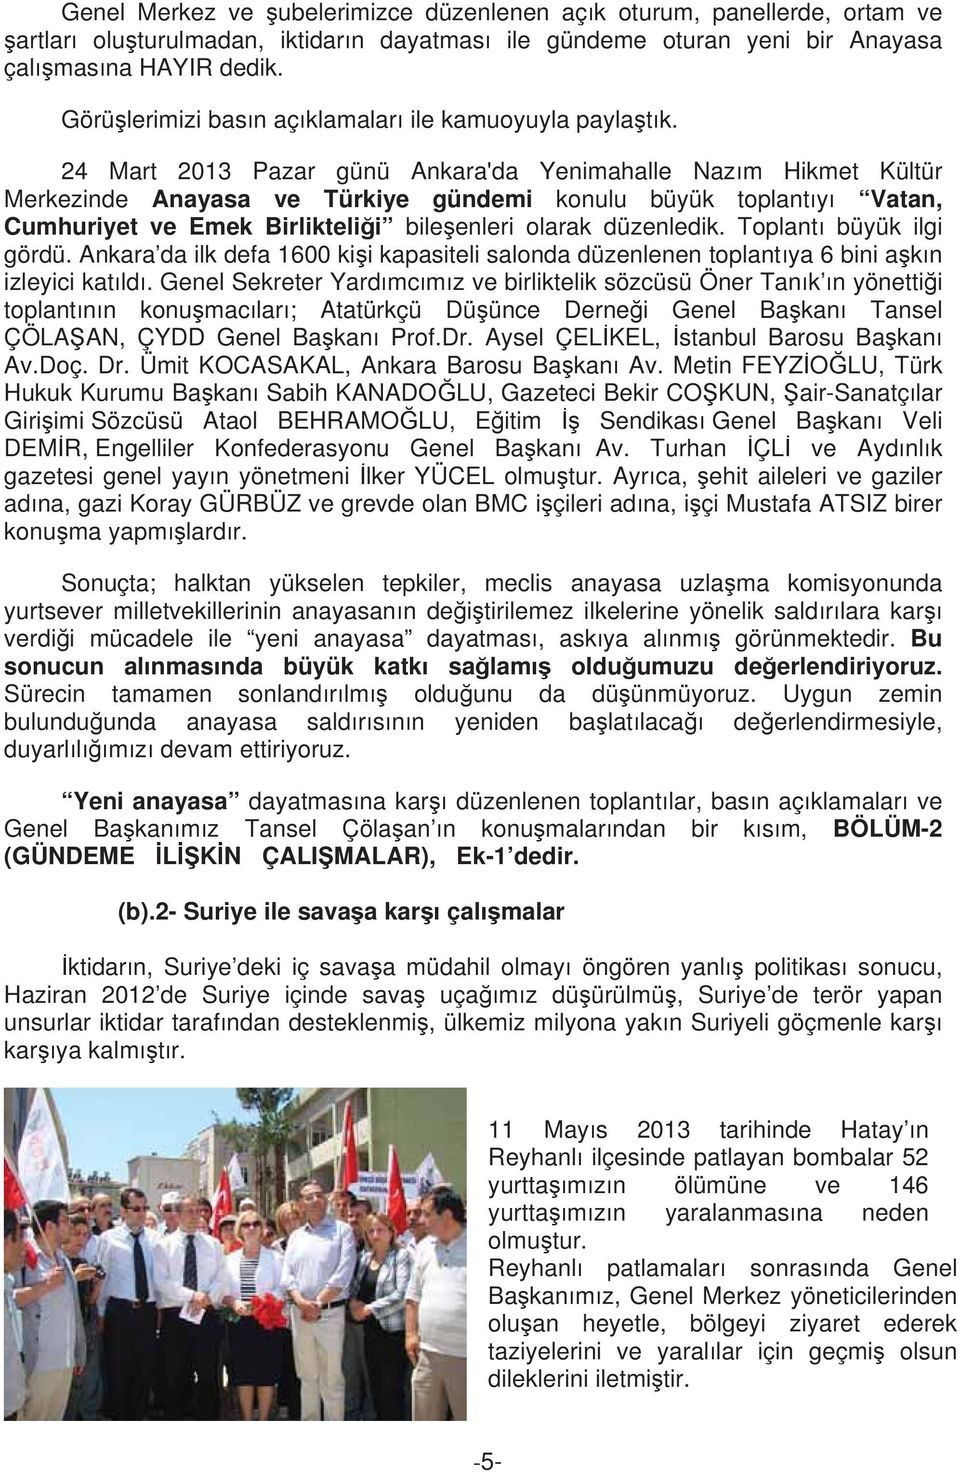 24 Mart 2013 Pazar günü Ankara'da Yenimahalle Naz m Hikmet Kültür Merkezinde Anayasa ve Türkiye gündemi konulu büyük toplant y Vatan, Cumhuriyet ve Emek Birlikteli i bile enleri olarak düzenledik.